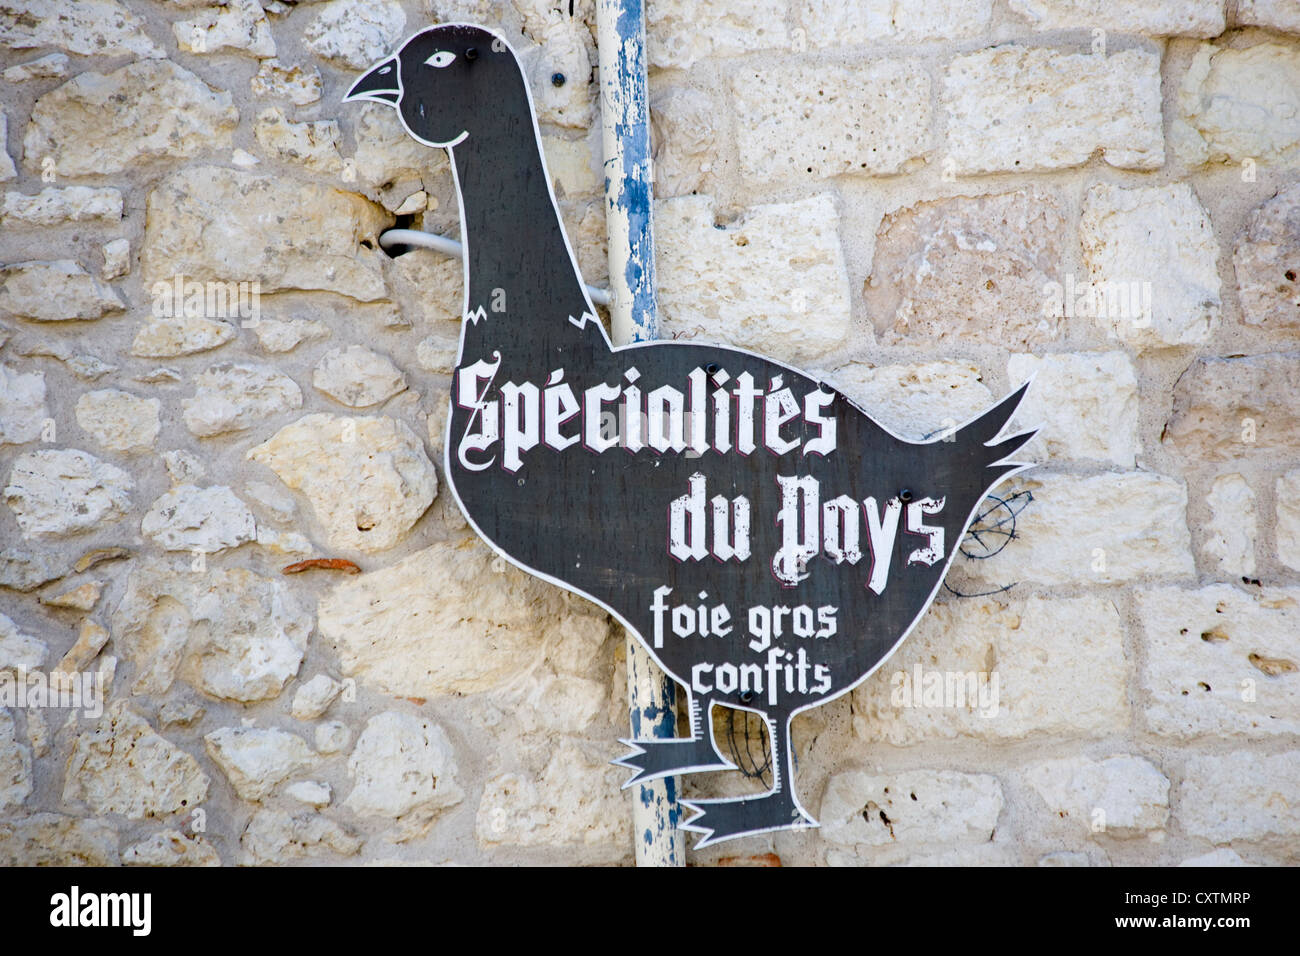 Fois Gras specialità alimentari segno, Dordogne, a sud ovest della Francia Foto Stock